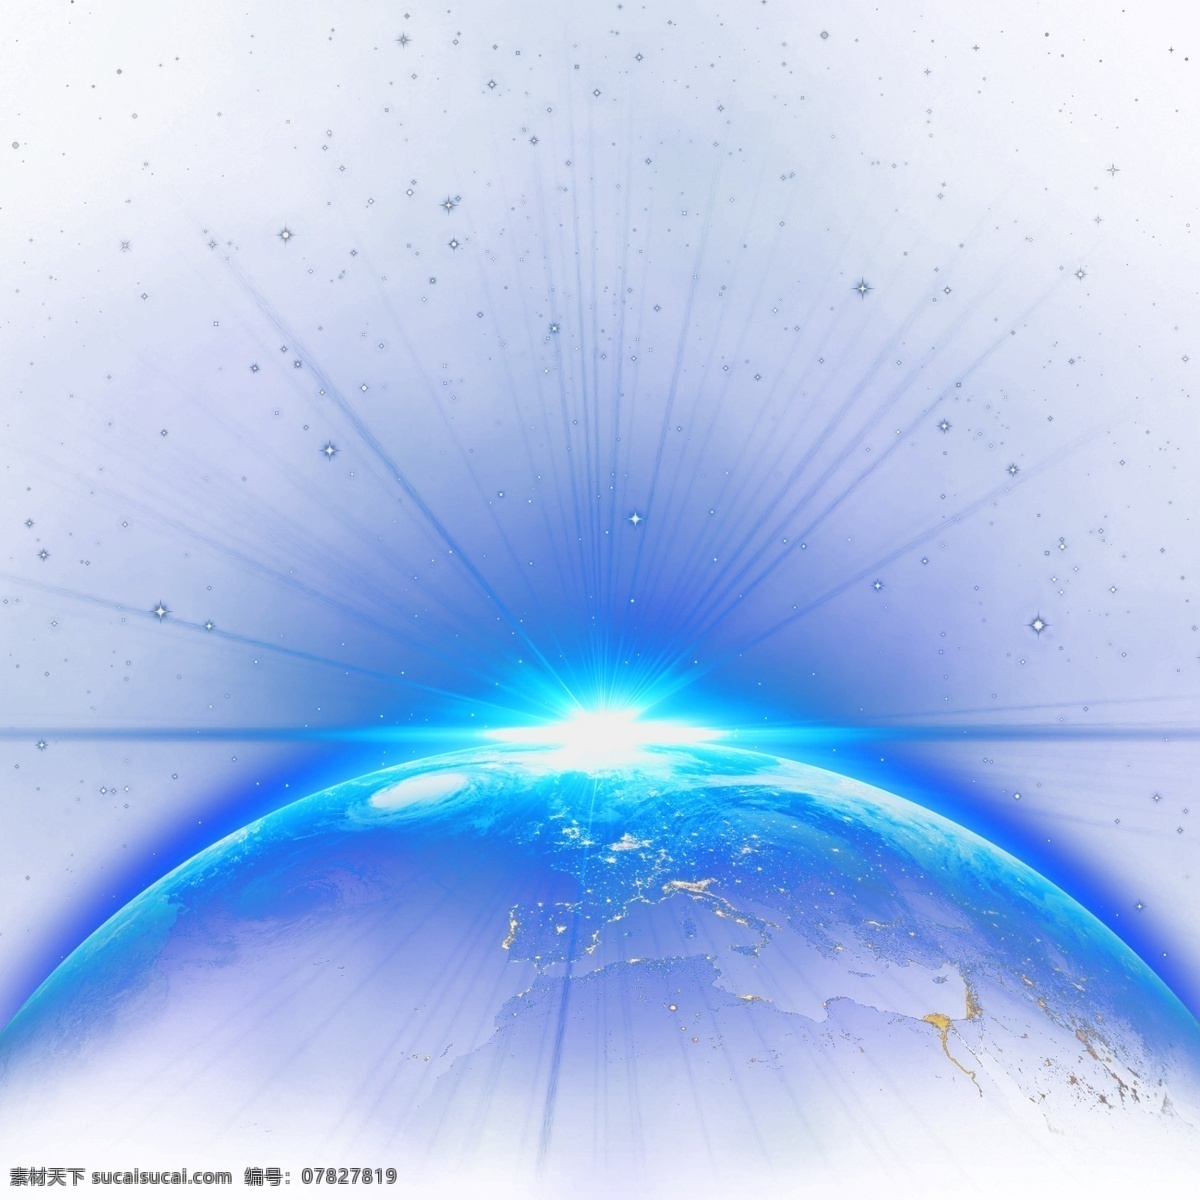 星球之光 光芒 创意 发光 发散 圆弧 地球 弧度 日出 星球 曙光 渐变 照耀 科幻 科技 蓝色 素材类 分层